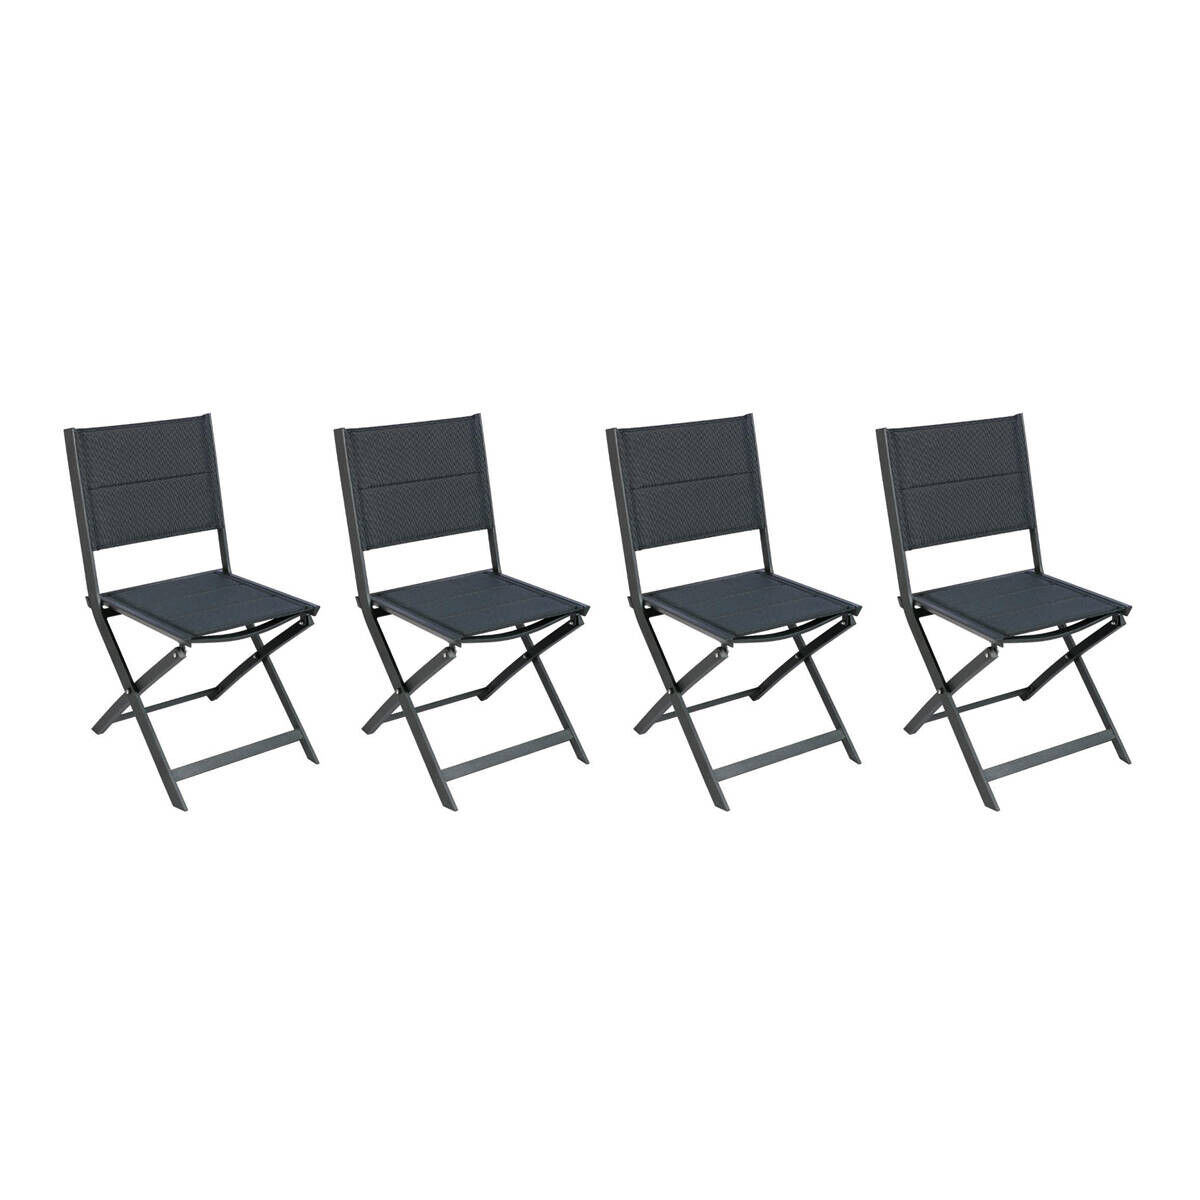 Hespéride Juego de 4 sillas jardín plegables ALLURE Antracita Aluminio, Texalina acolchado Hespéride Poivre / Graphite 47 x 54,5 x 88,8 cm